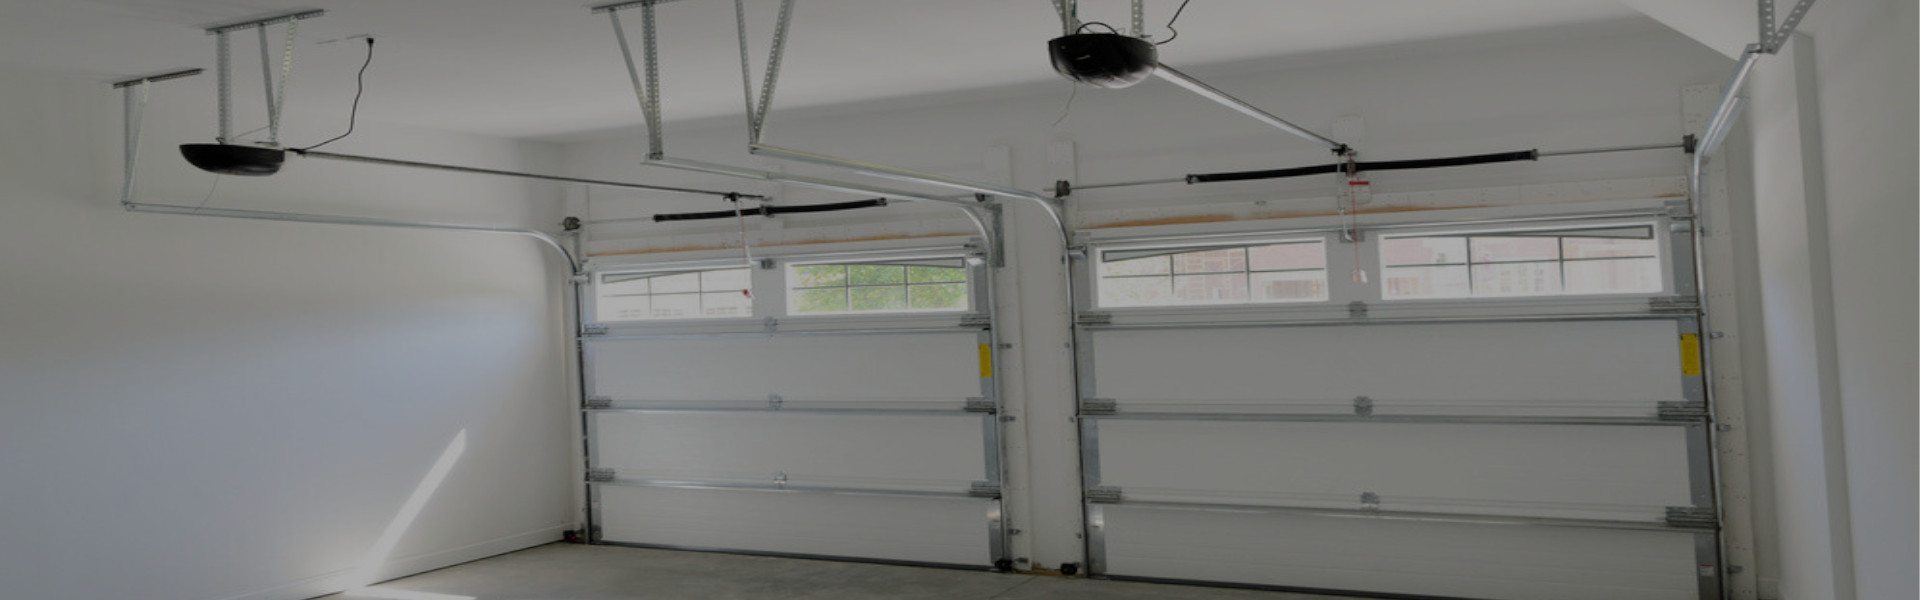 Slider Garage Door Repair, Glaziers in Walton-on-Thames, Hersham, KT12